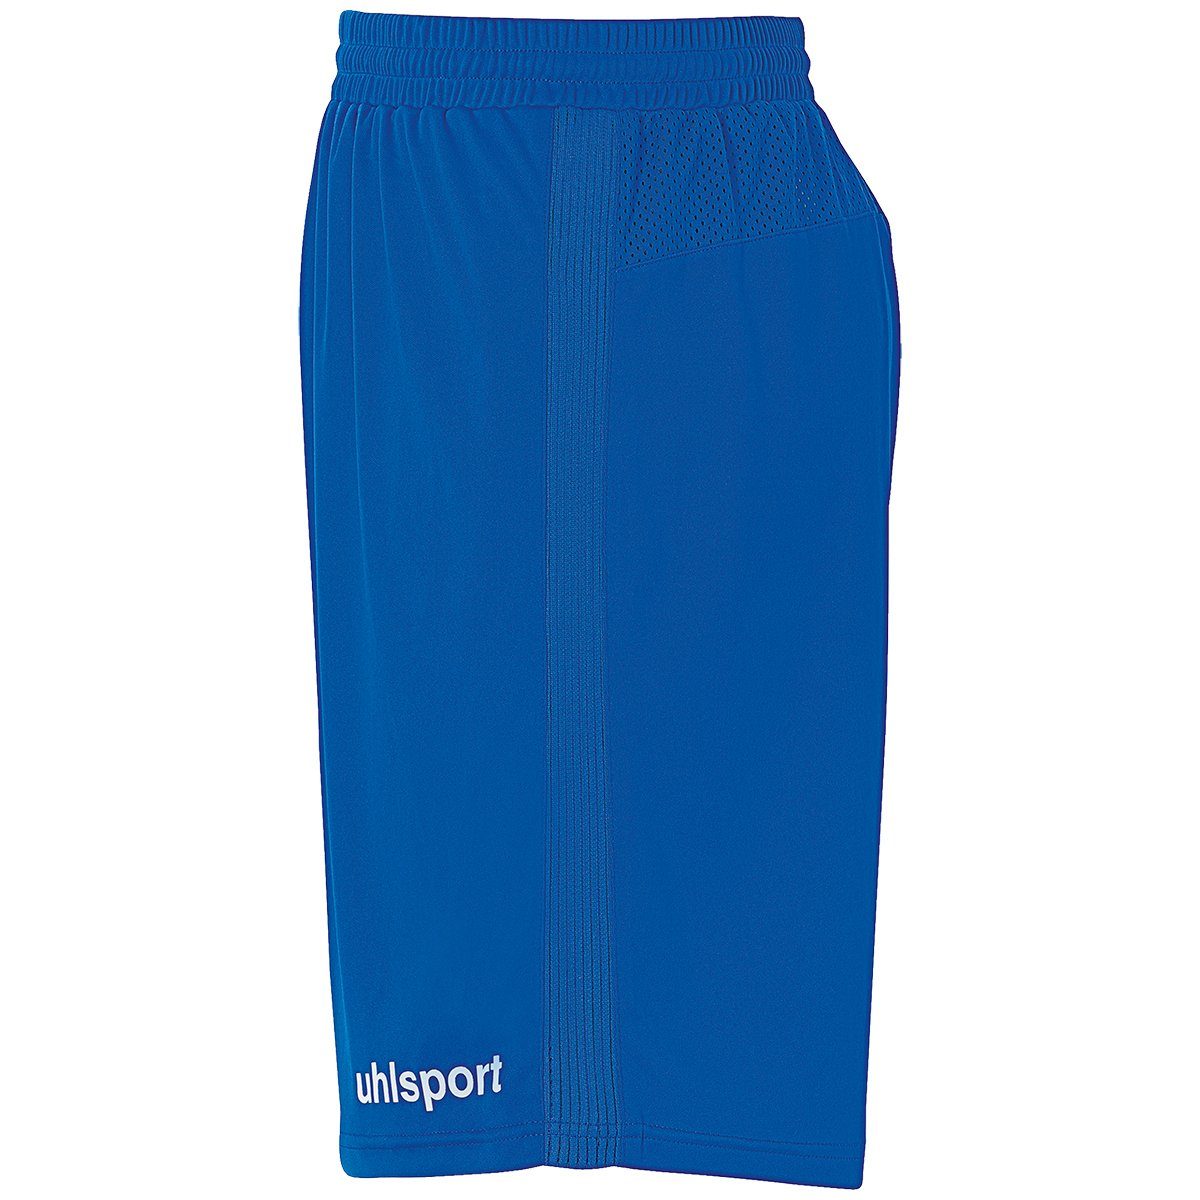 azurblau/weiß PERFORMANCE SHORTS uhlsport Shorts uhlsport Shorts